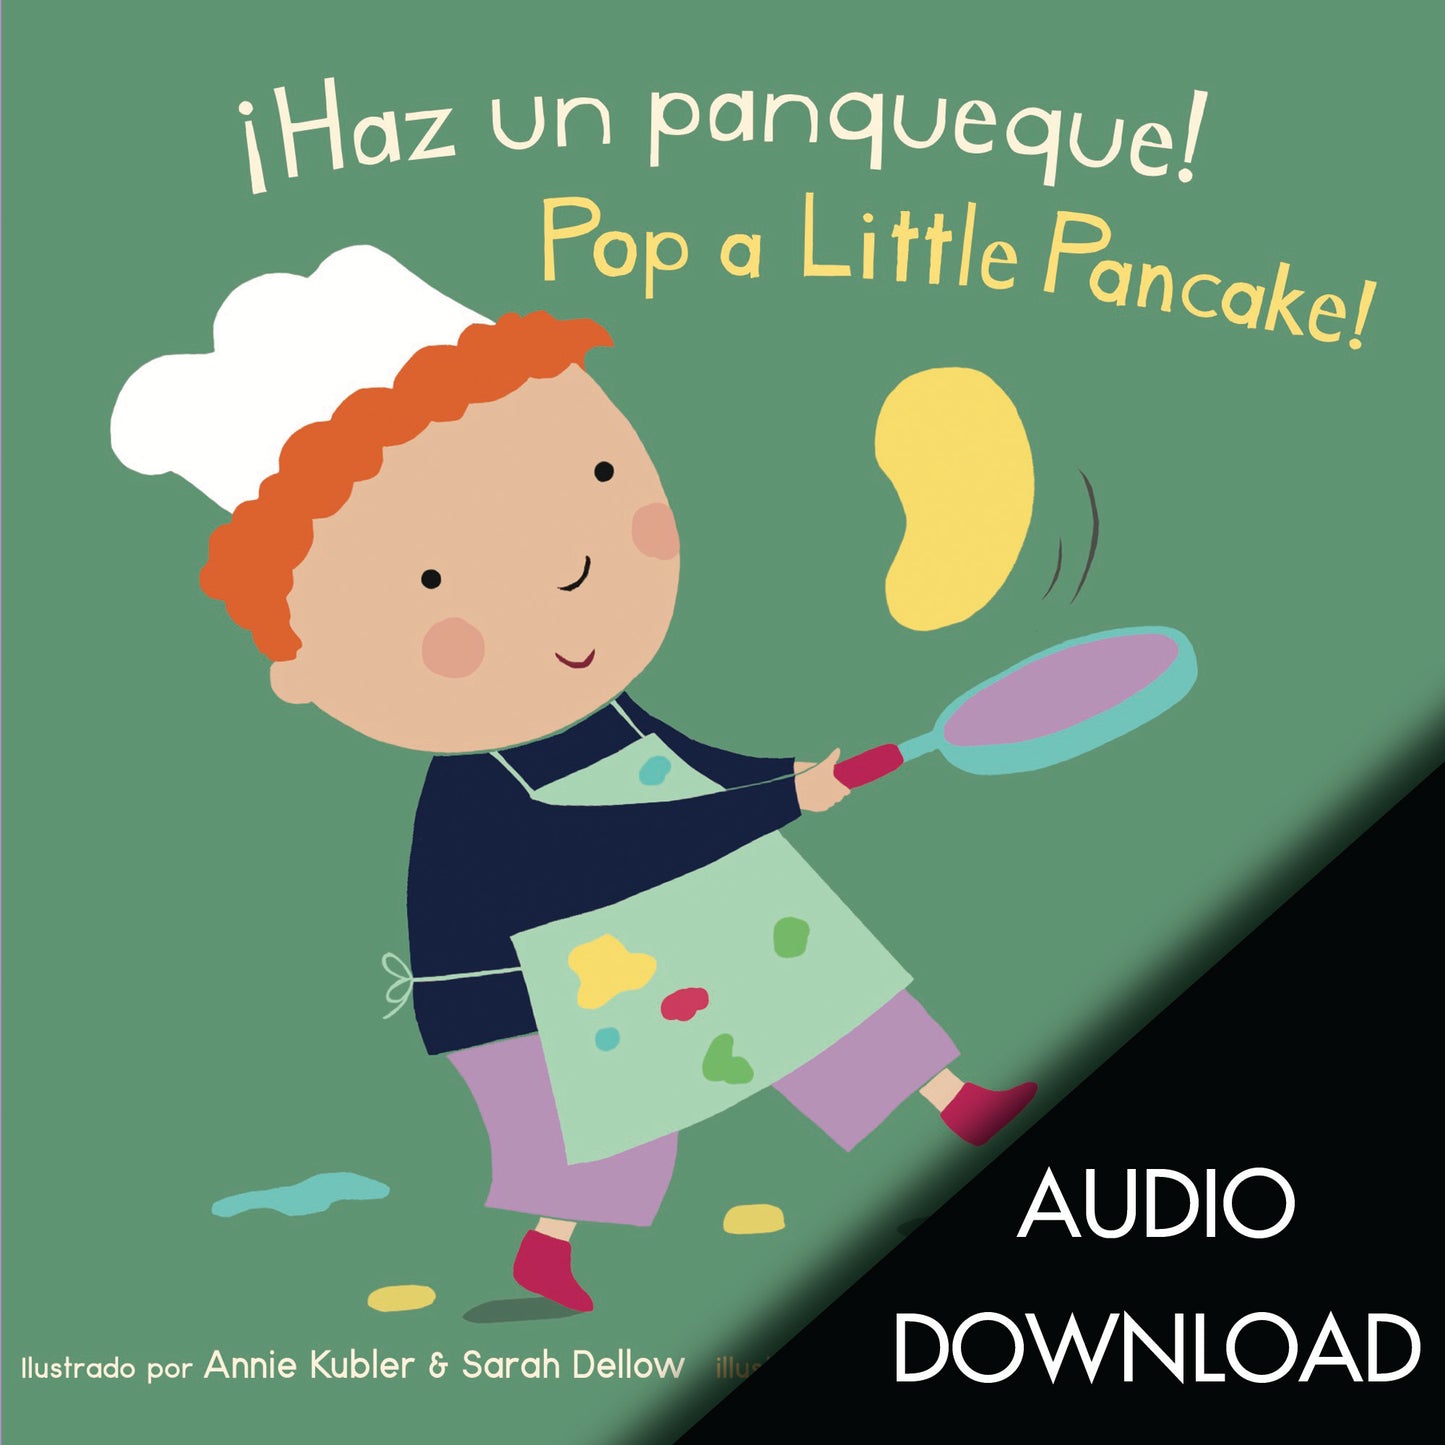 [Digital Download] ¡Haz un panqueque!/Pop a Little Pancake! MP3